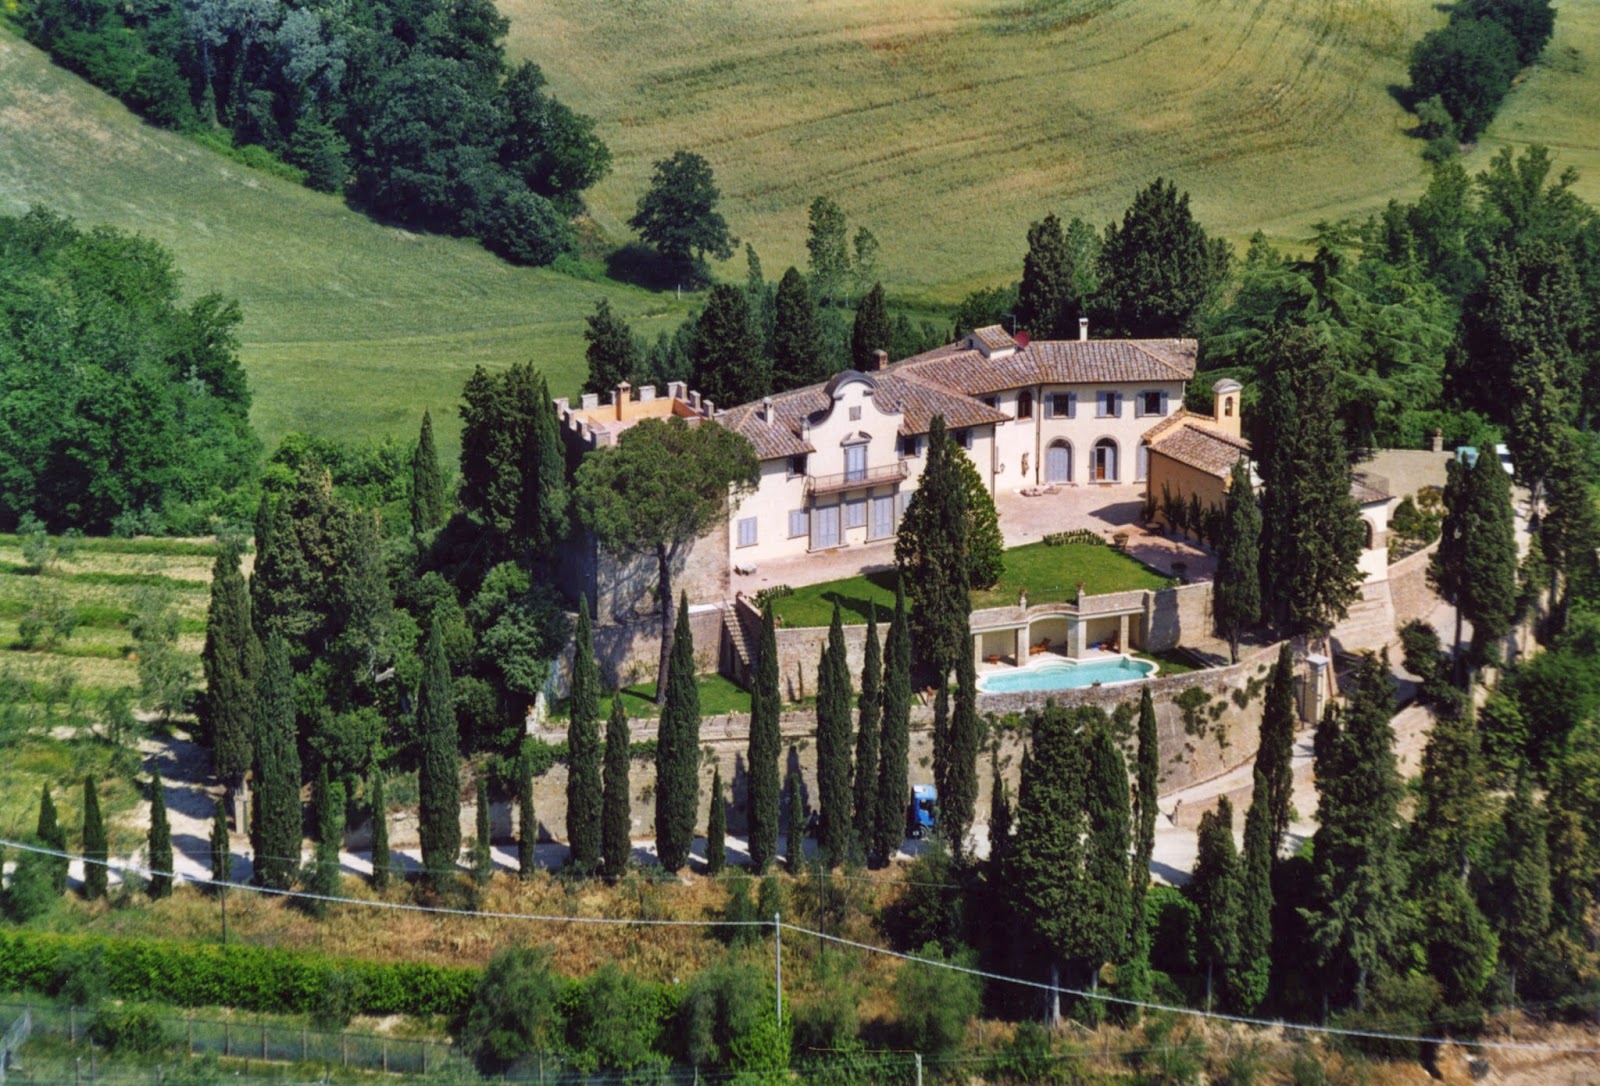 Dimora del Castello Ferienhaus in Italien